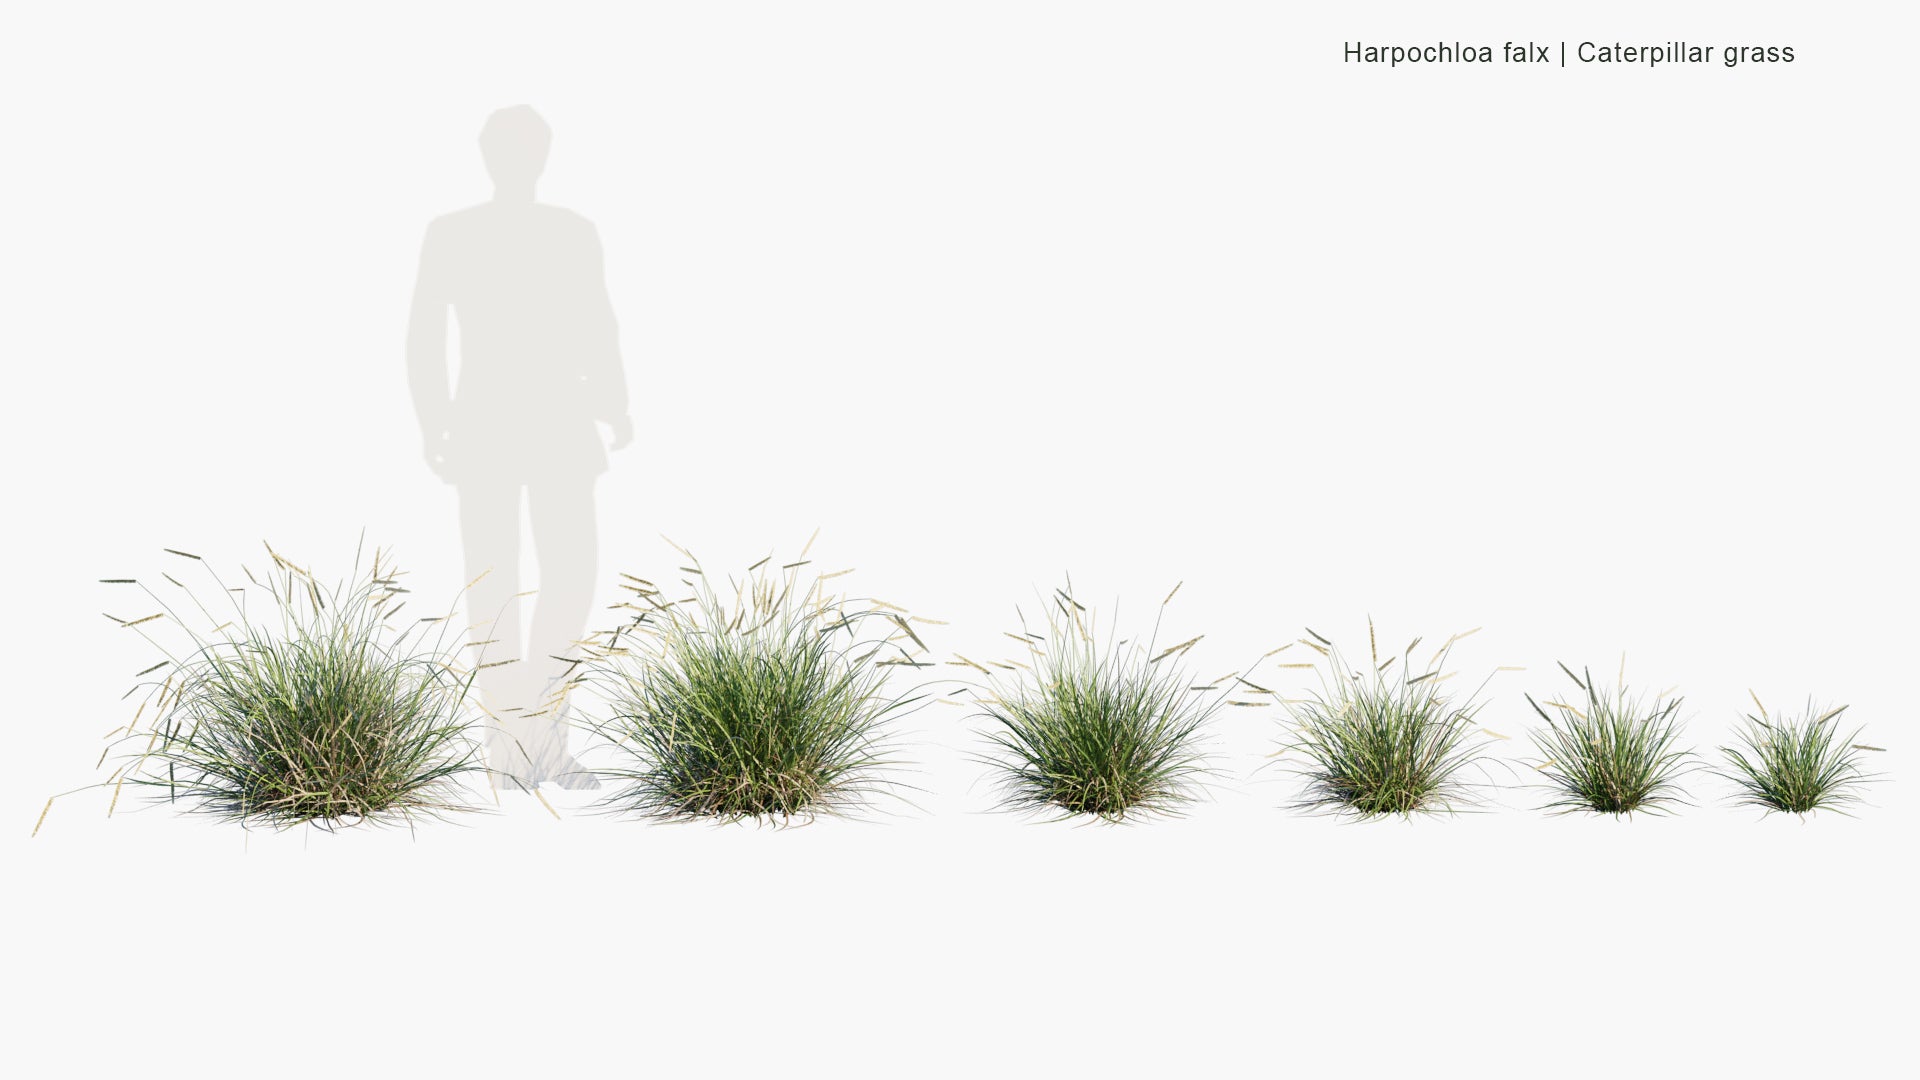 Low Poly Harpochloa Falx - Caterpillar Grass (3D Model)